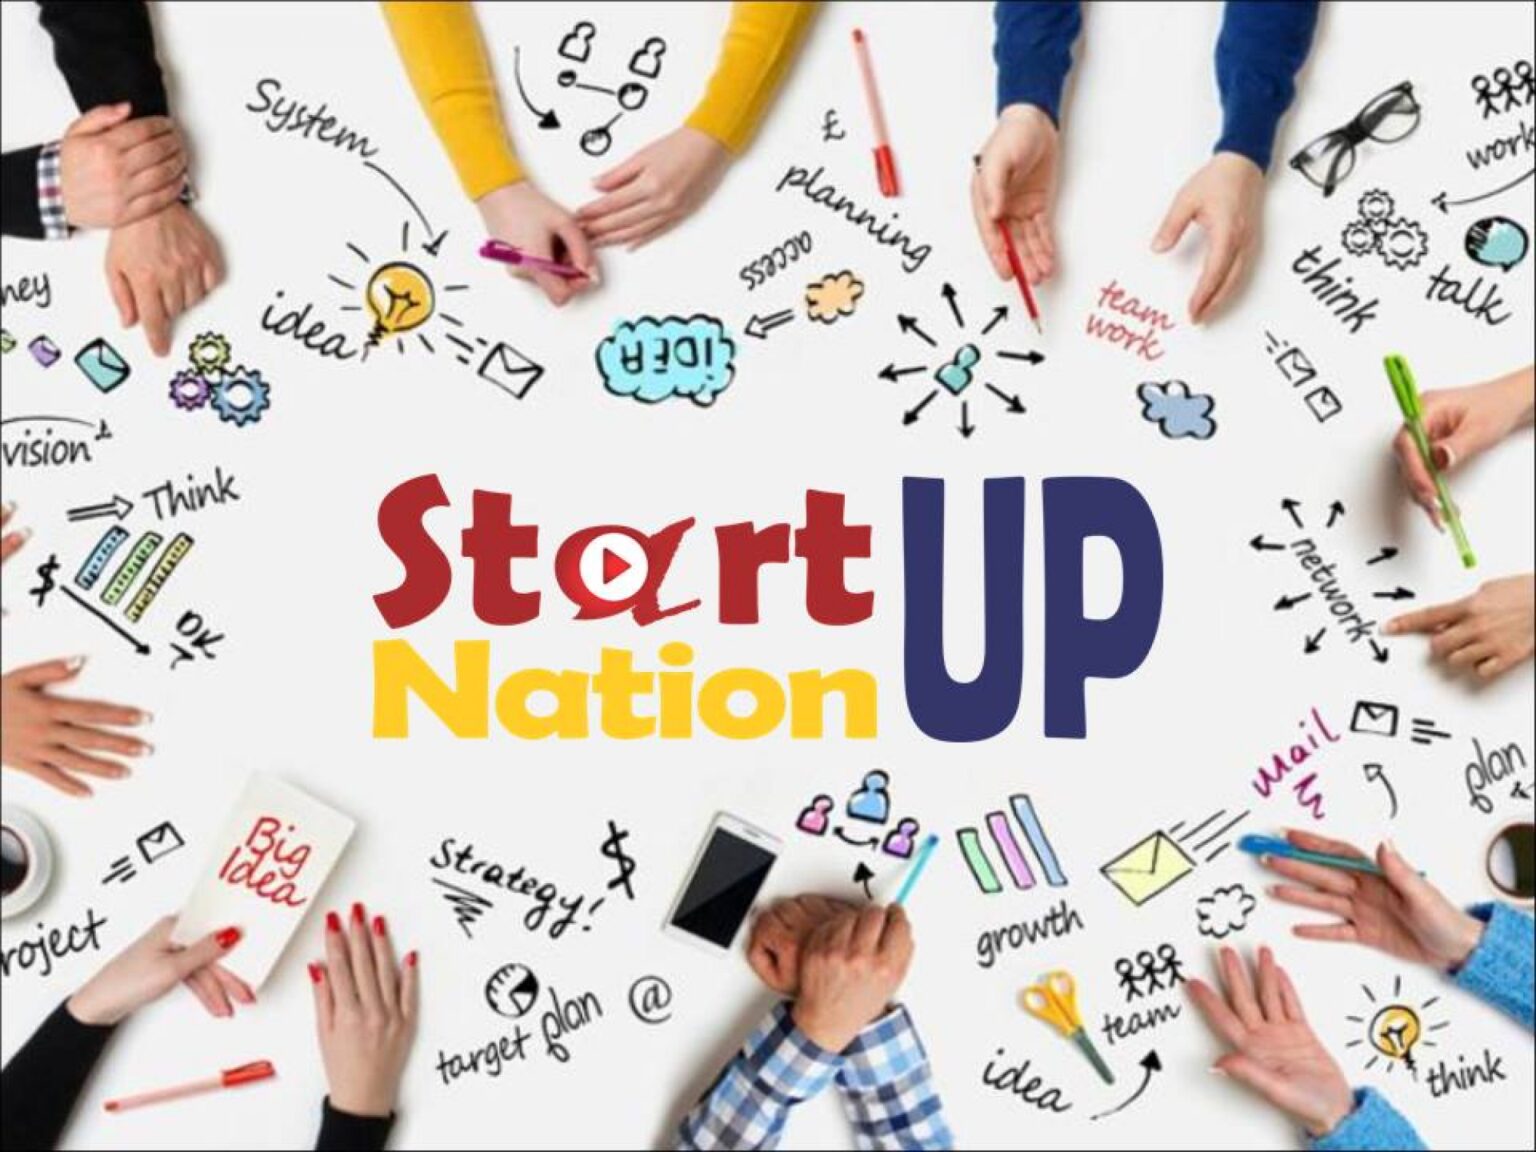 Pentru anul curent, bugetul alocat schemei de minimis, aprobat prin Legea nr. 317/2021, este de 520.031.000 lei, din care 500.000.000 lei pentru Pilonul I Start-up Nation România și 20.031.000 lei pentru Pilonul II Start-up Nation Diaspora